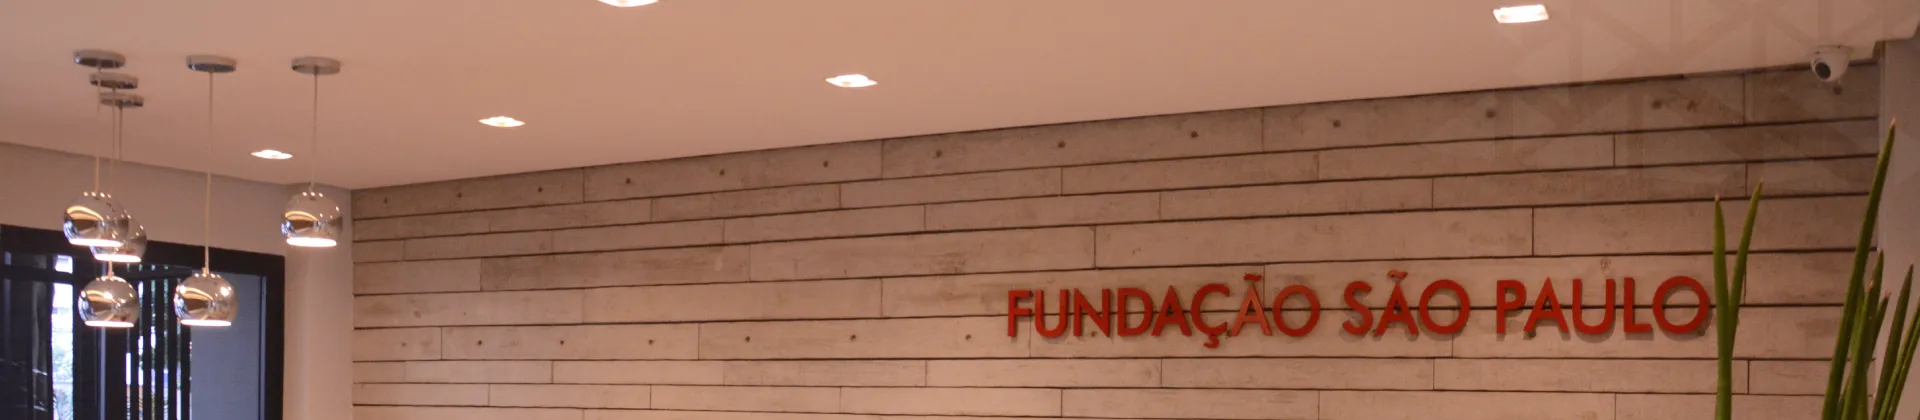 Imagem ilustrativa que mostra um detalhe da entrada da FUNDASPonde se lê 'Fundação São Paulo' na parede